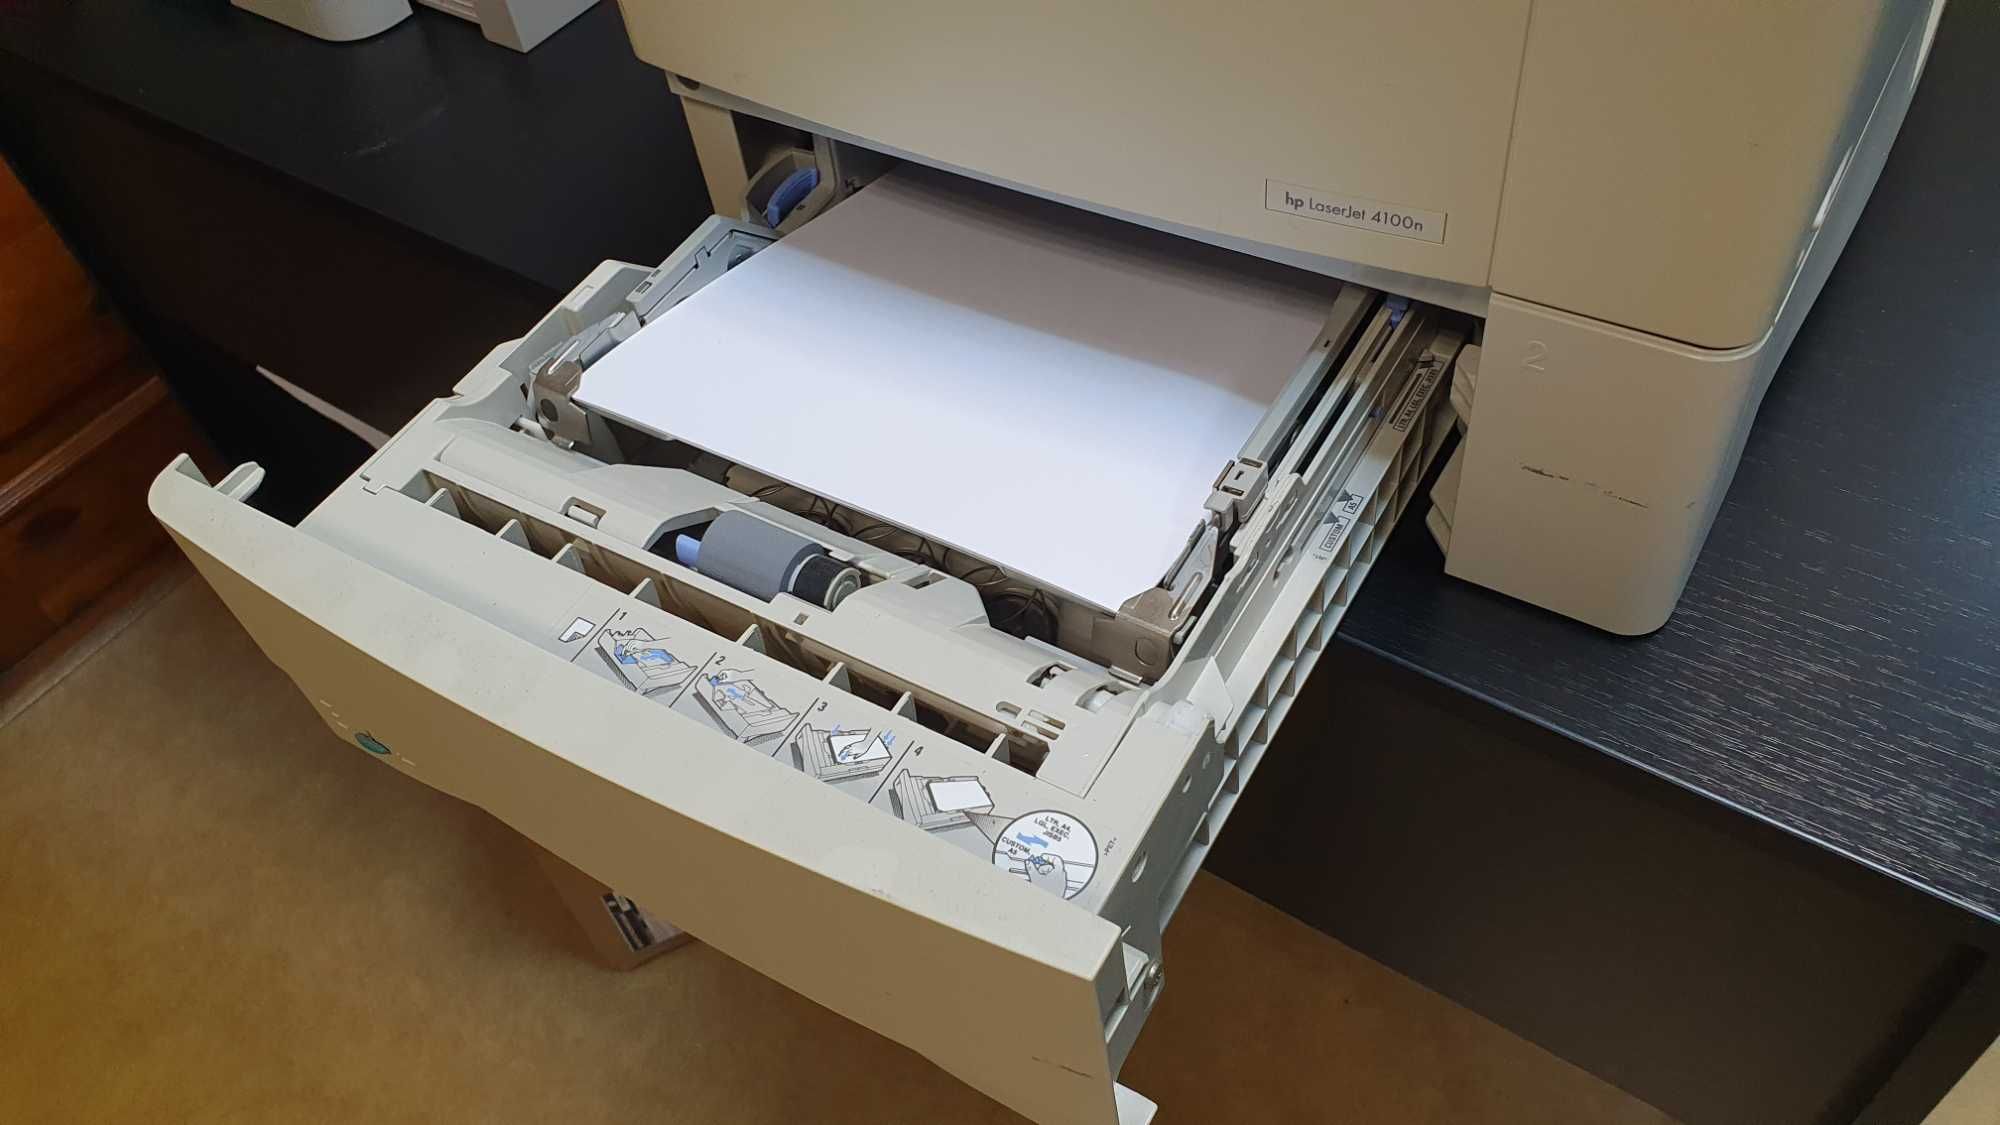 Сетевой лазерный принтер с 2 лотками для бумаги HP LaserJet 4100N